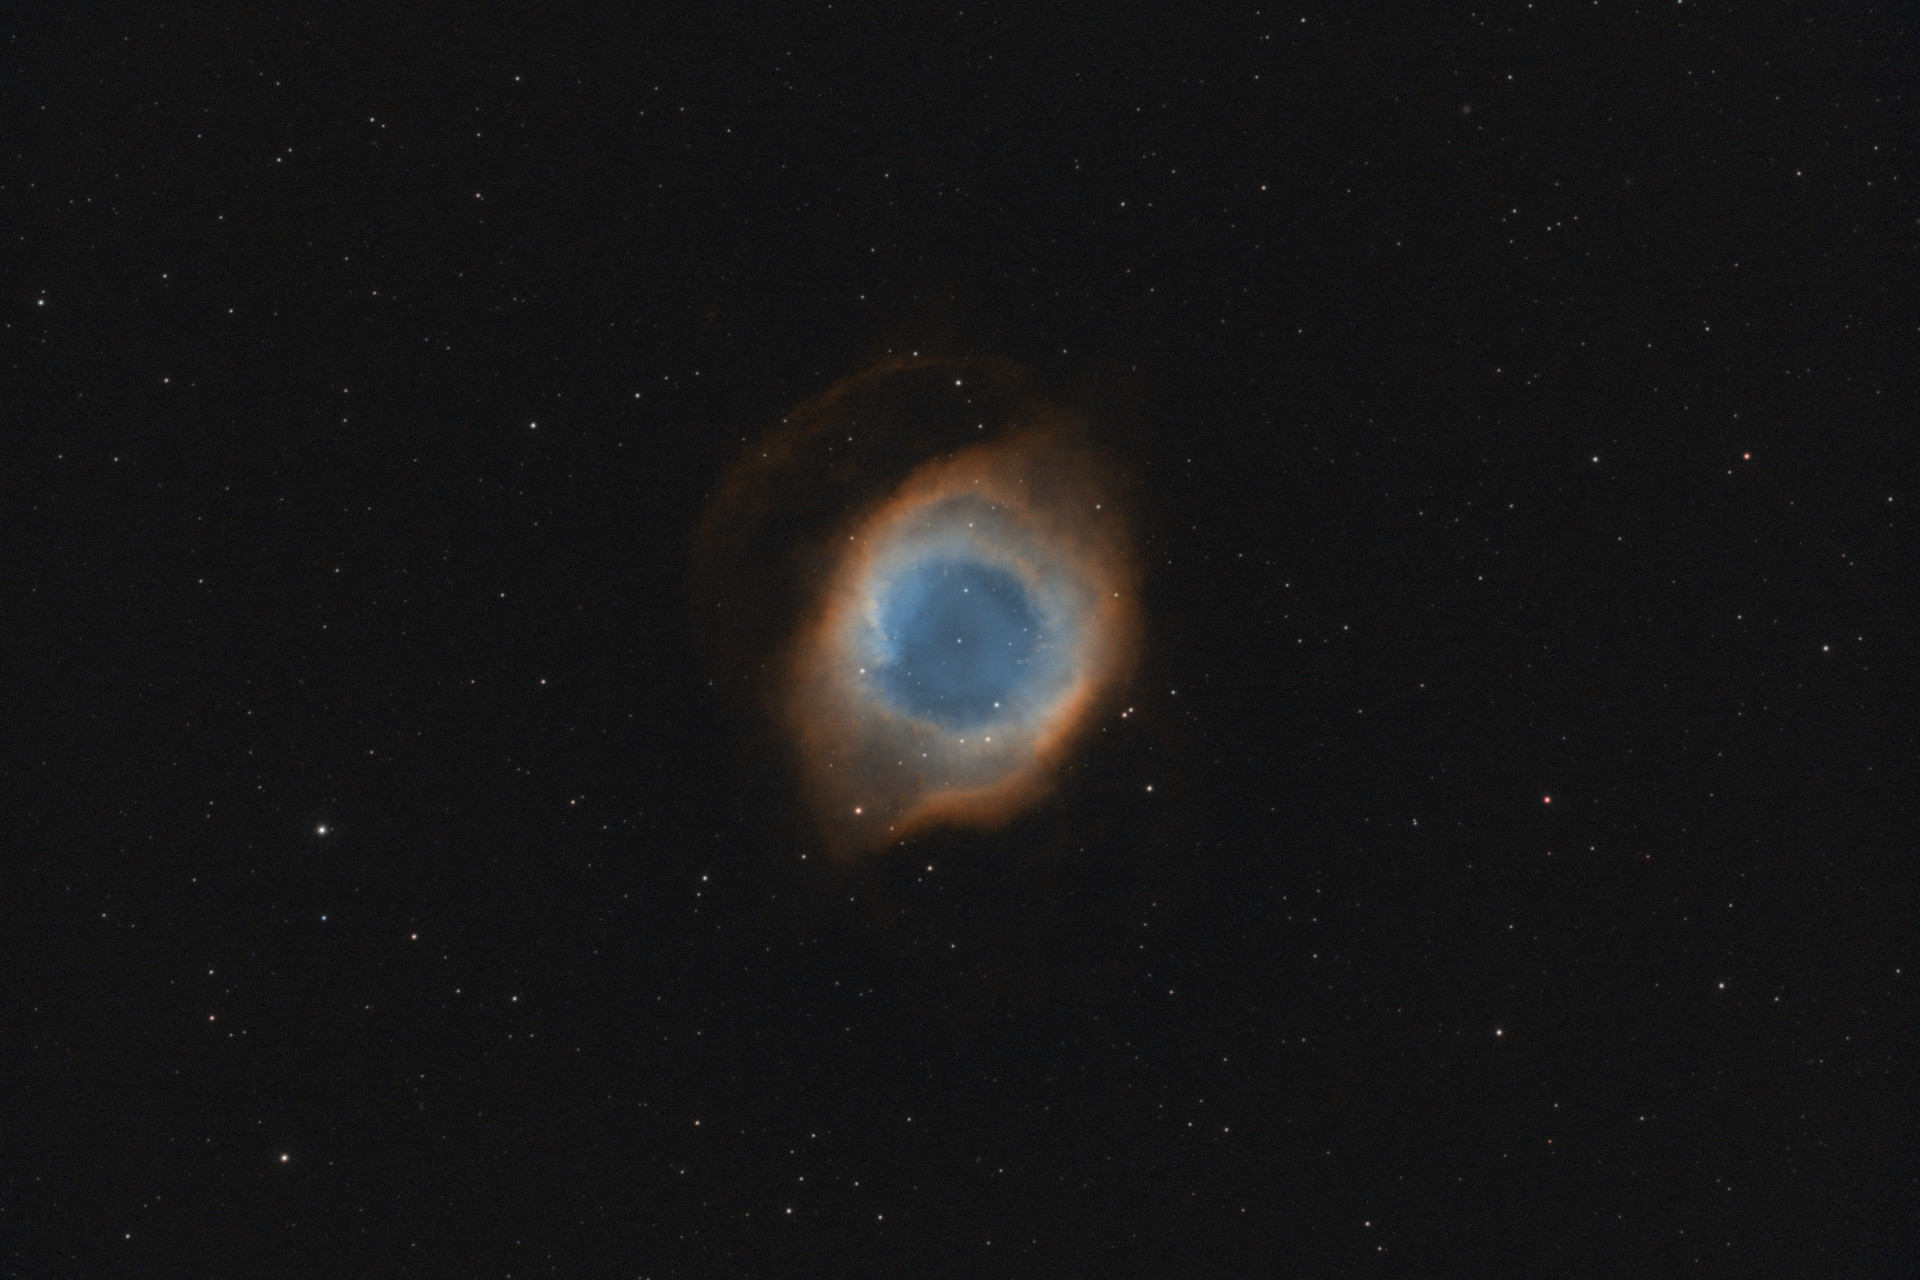 NGC 7293 - Helix Nebula